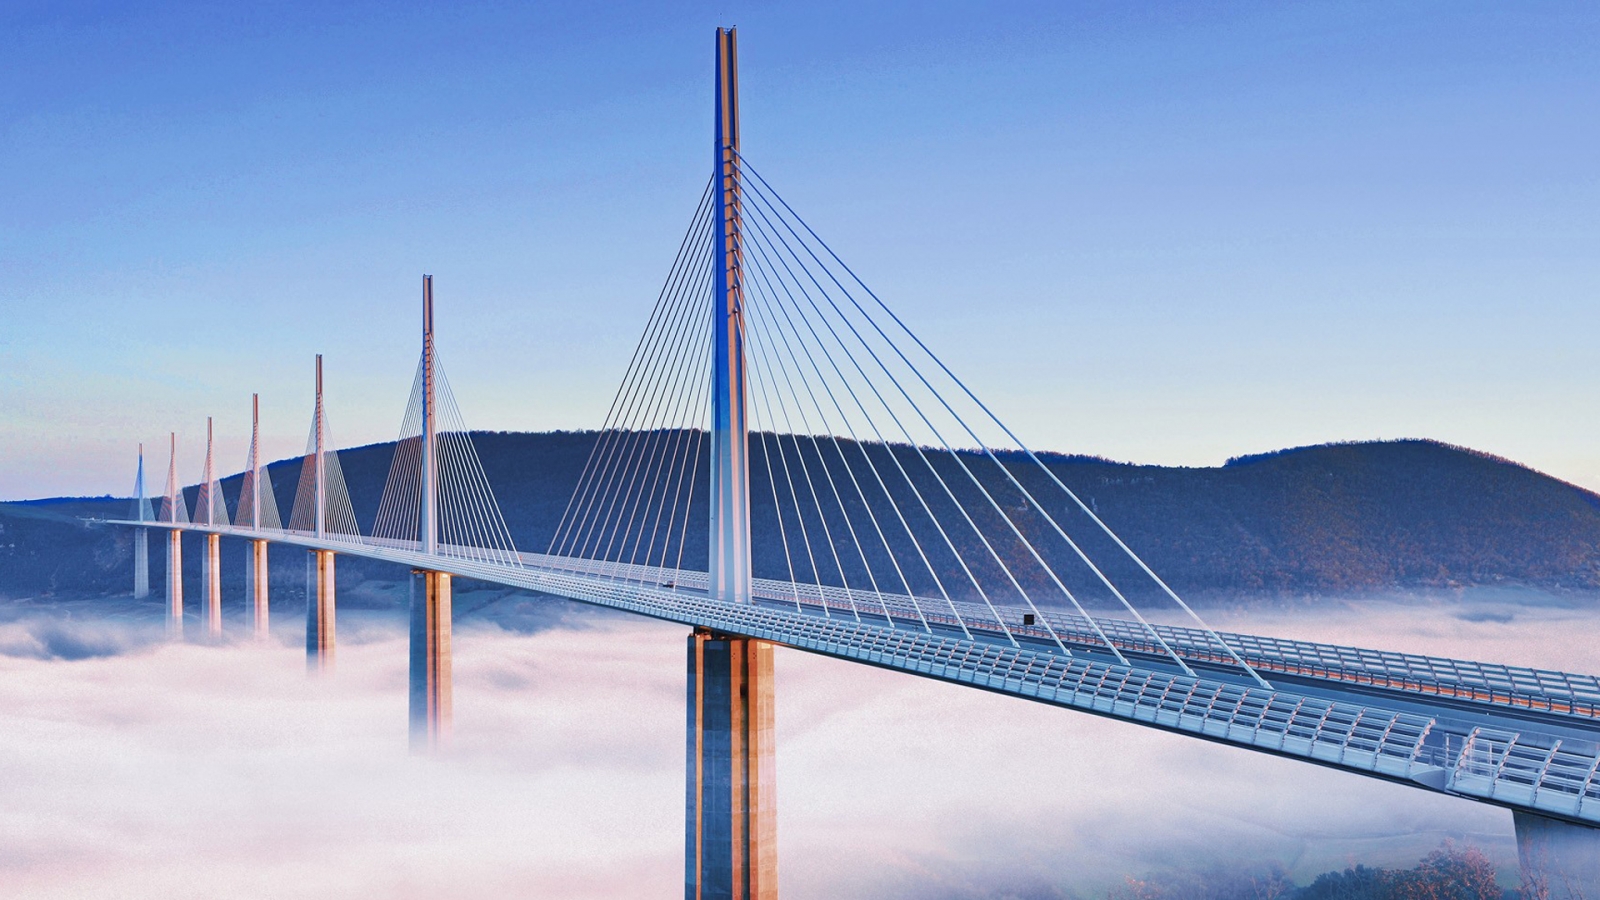 Millau cây cầu được mệnh danh là cây cầu cao nhất thế giới